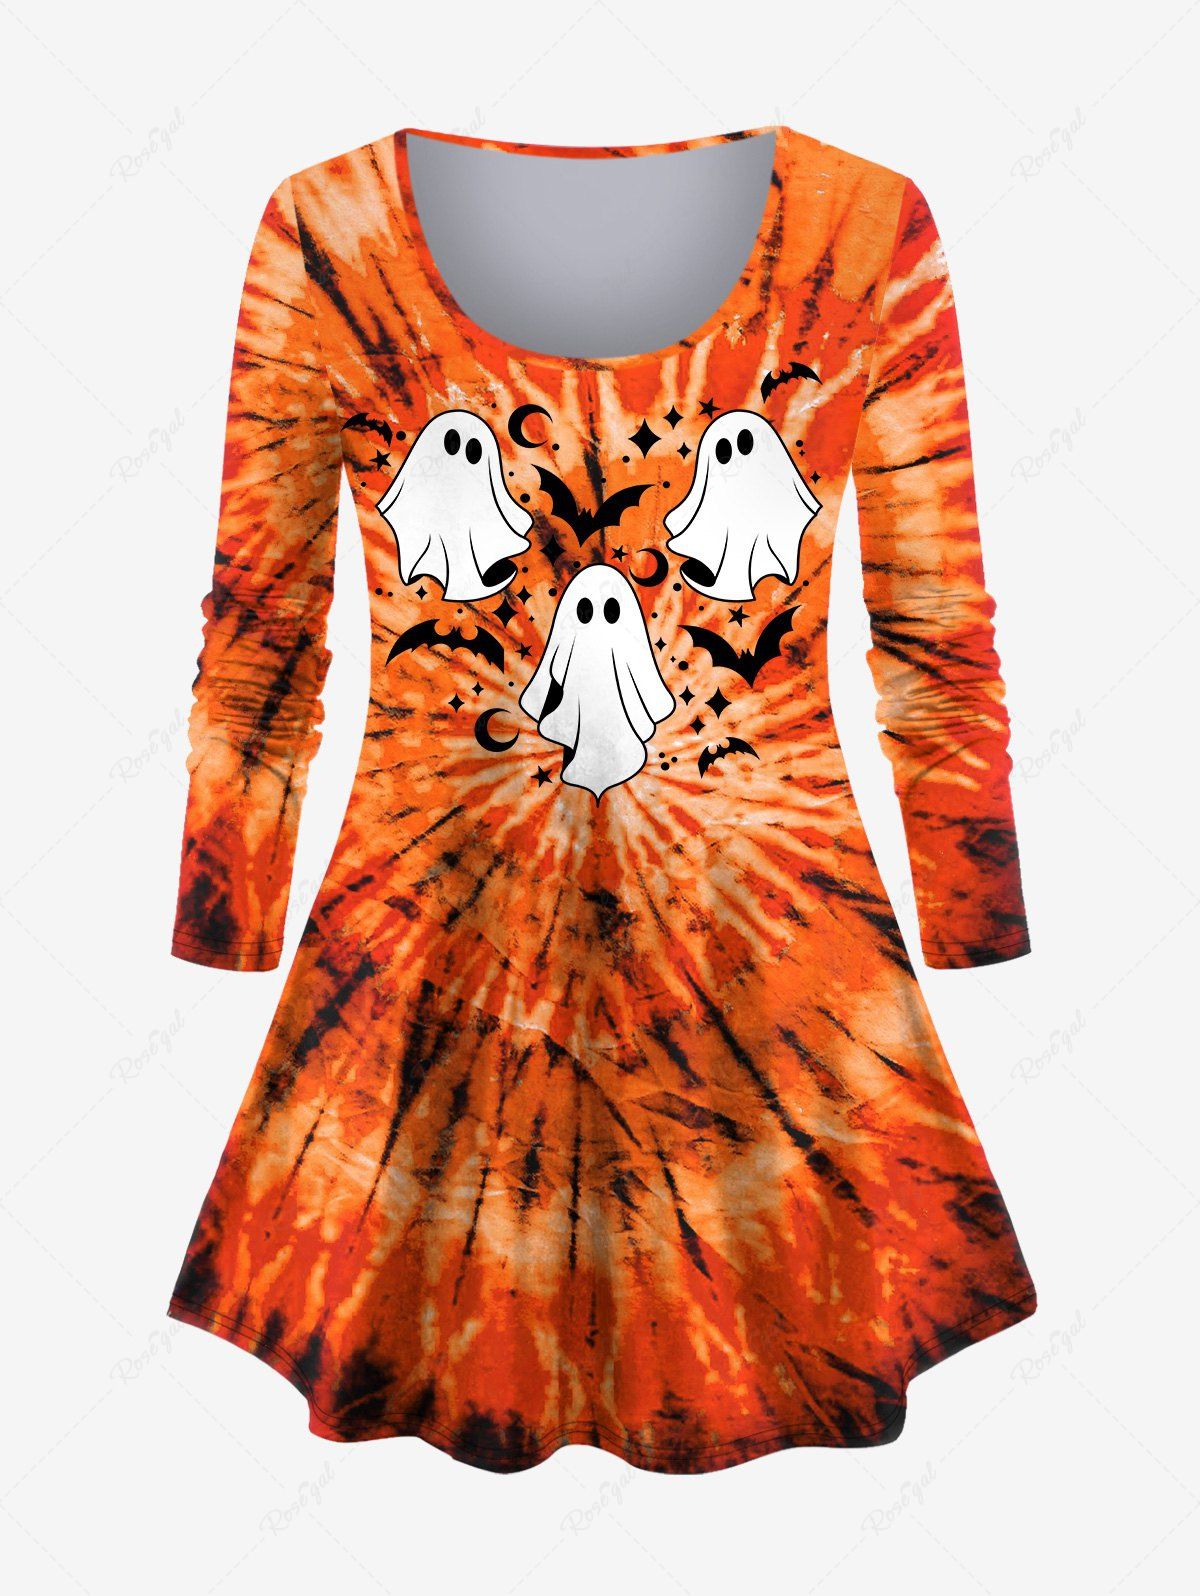 T-shirt D'Halloween Teinté Lune et Fantôme Imprimés de Grande Taille Orange 6X